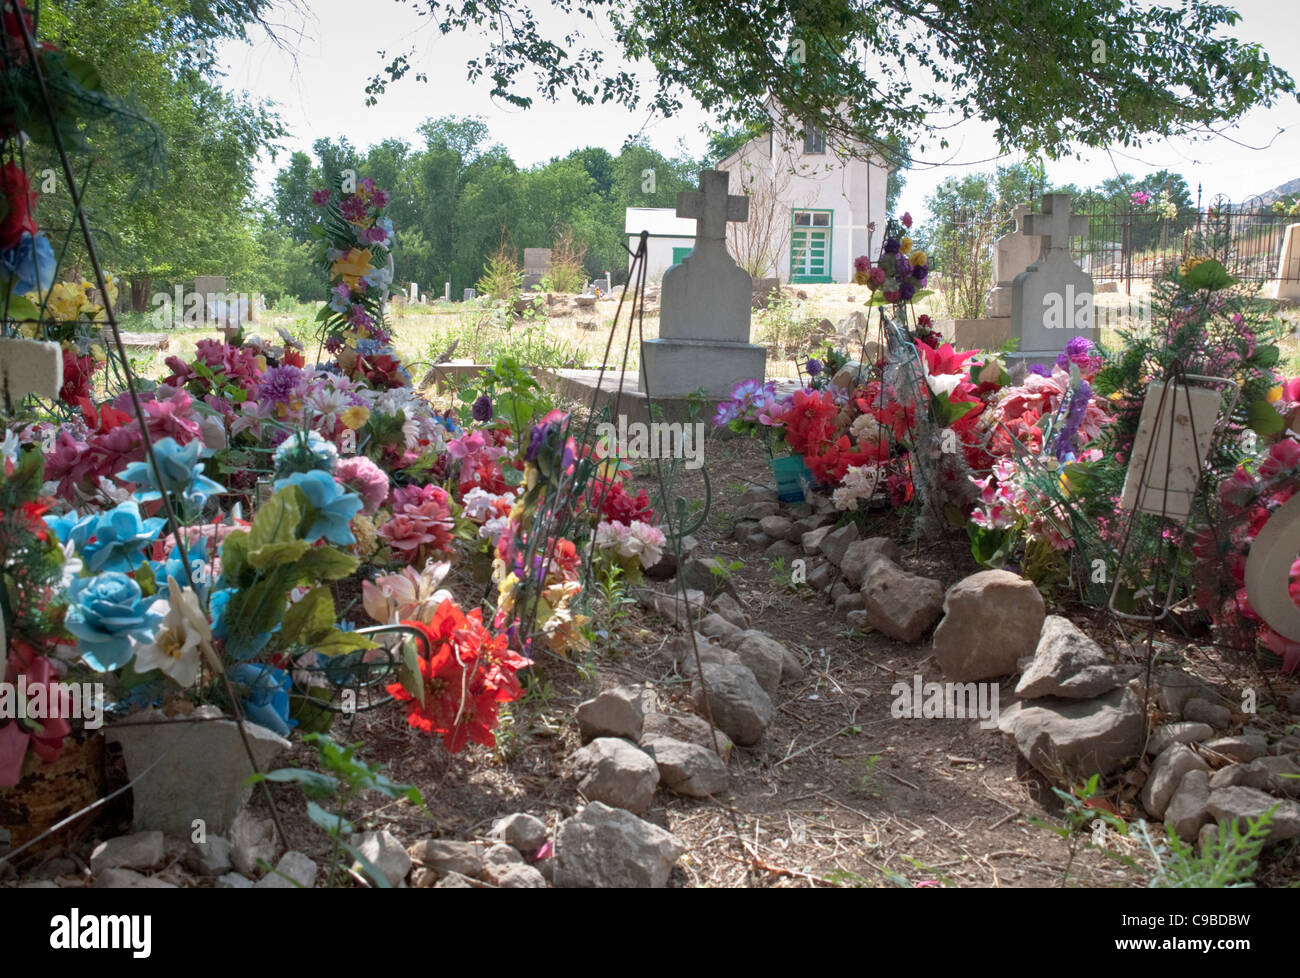 Le cimetière à l'intérieur de l'église de triage à San Patricio est parsemé de fleurs en plastique de couleur vive. Banque D'Images